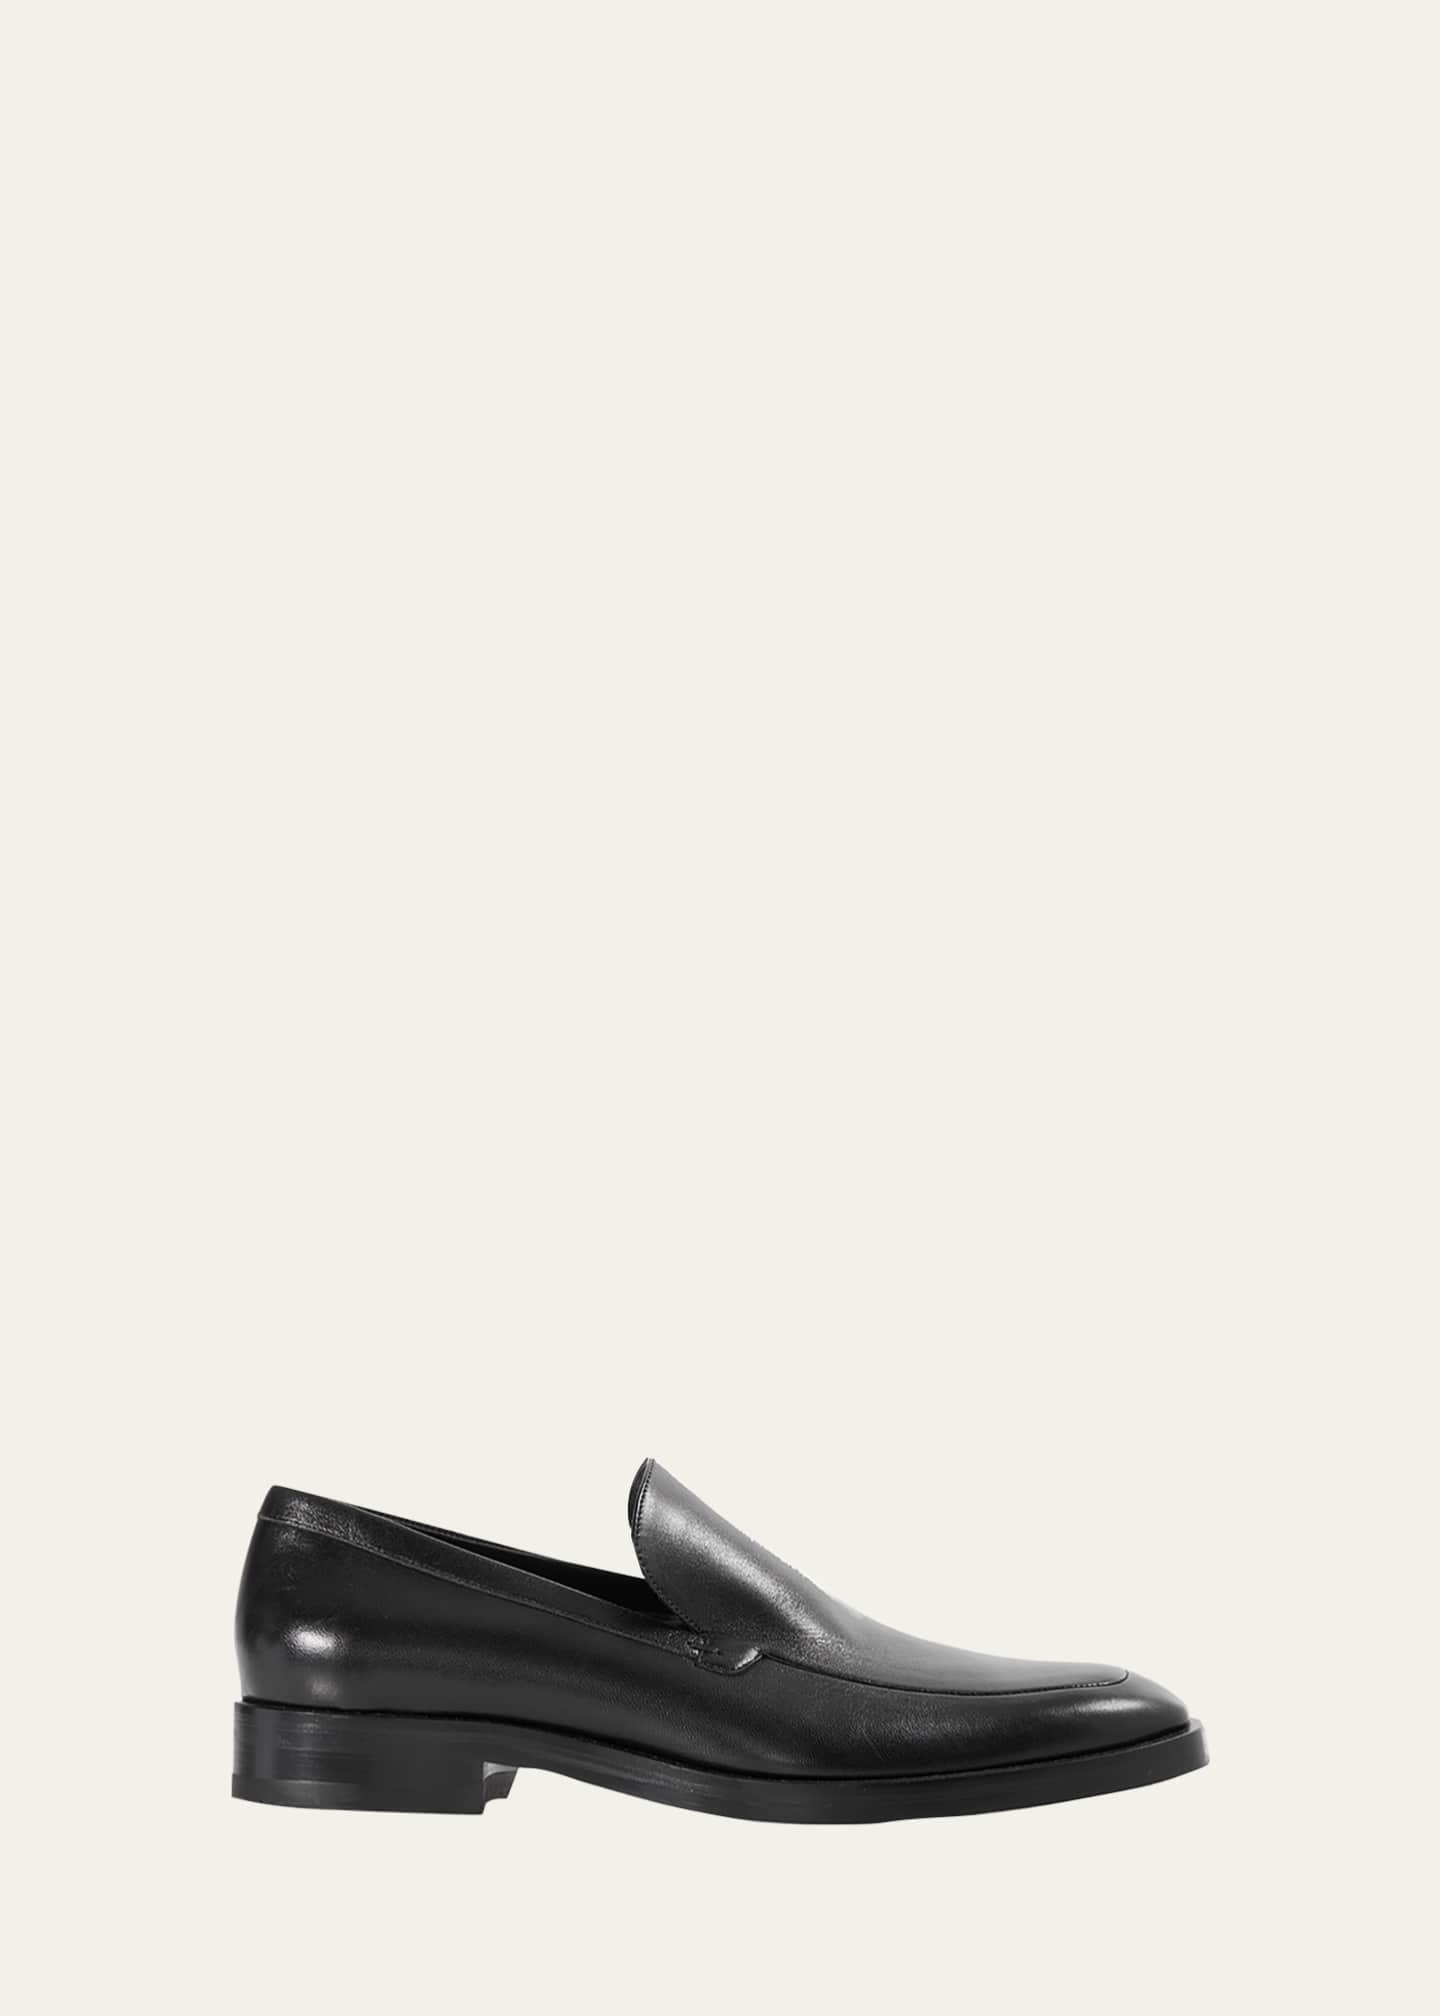 Paul Stuart Men's Nantes Shiny Leather Loafers - Bergdorf Goodman